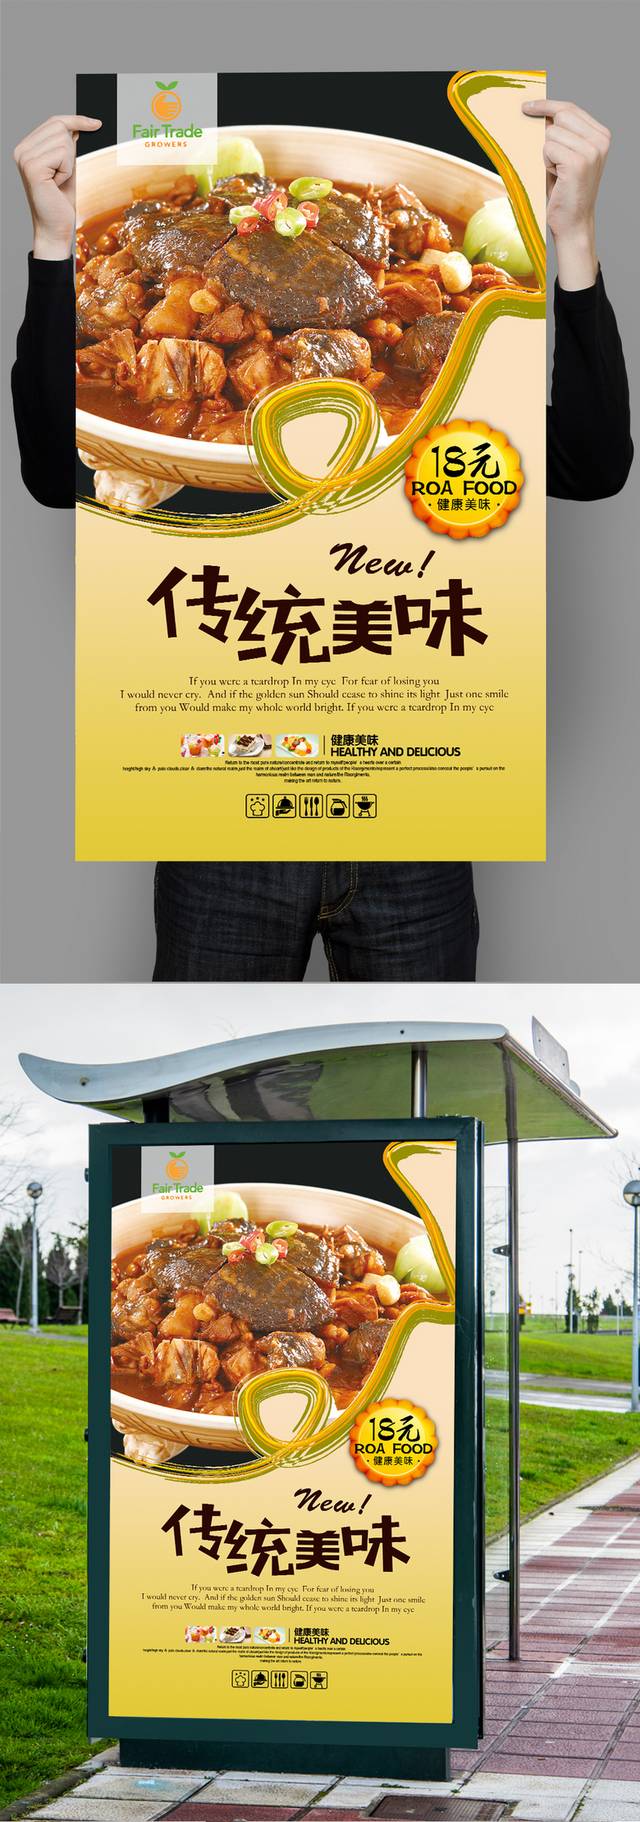 清新甲鱼宣传海报设计psd